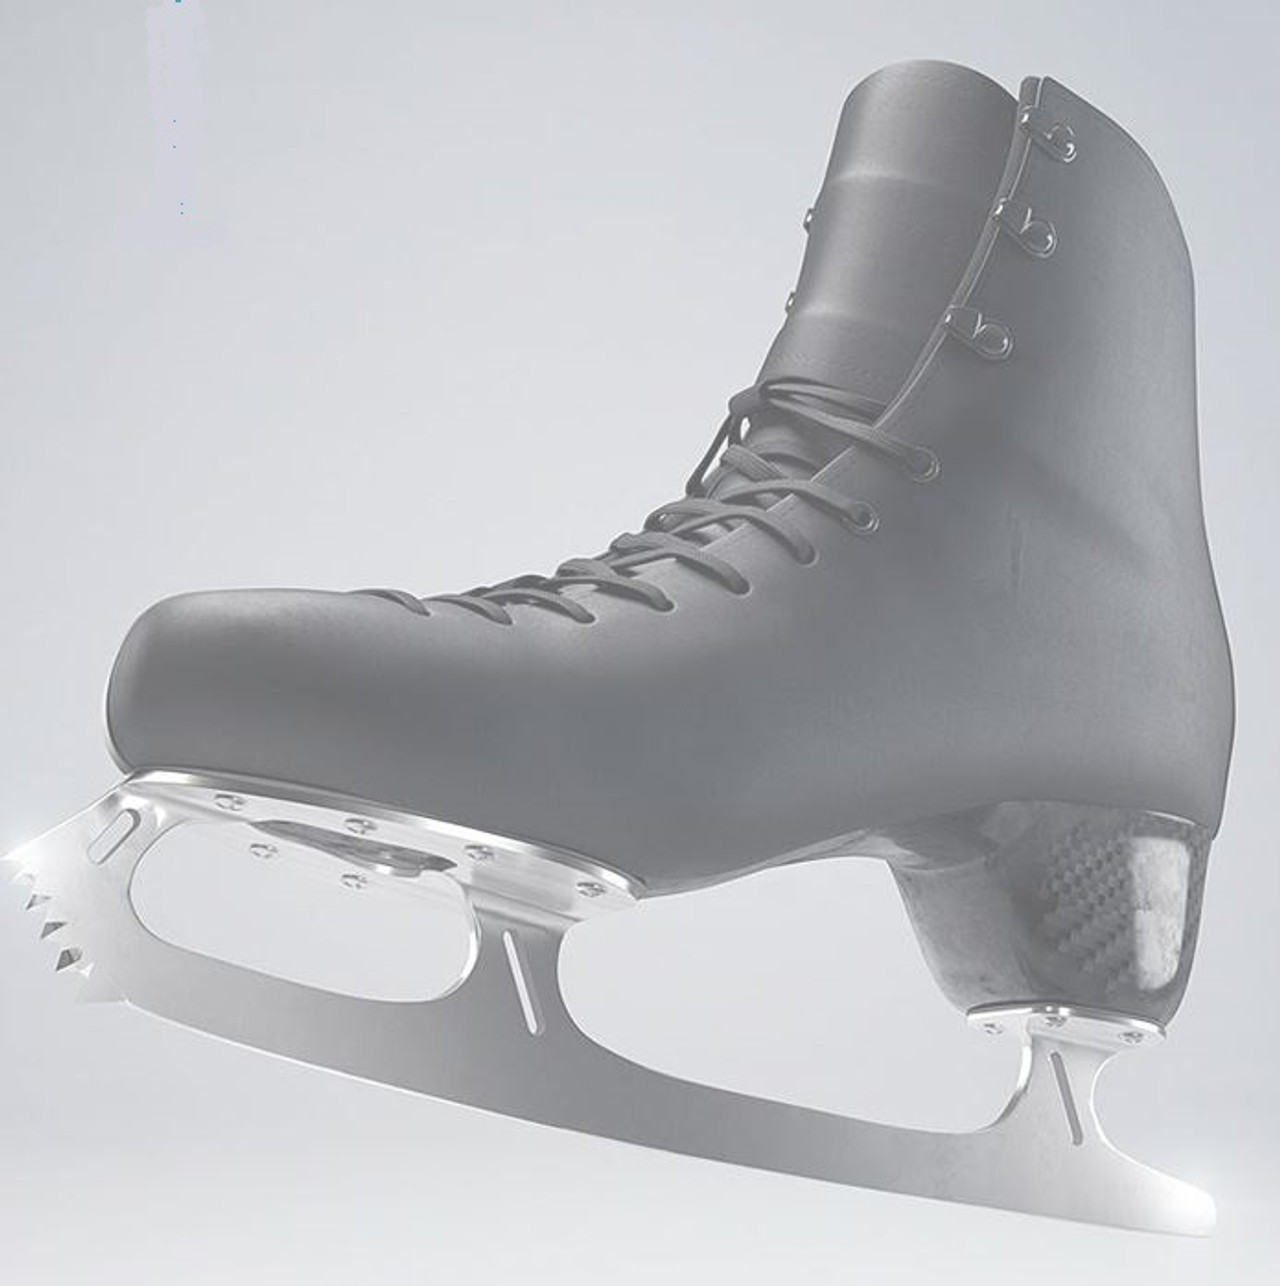 Figure Skates - Aura Boots - Houston Skate & Sports Orthotics Center